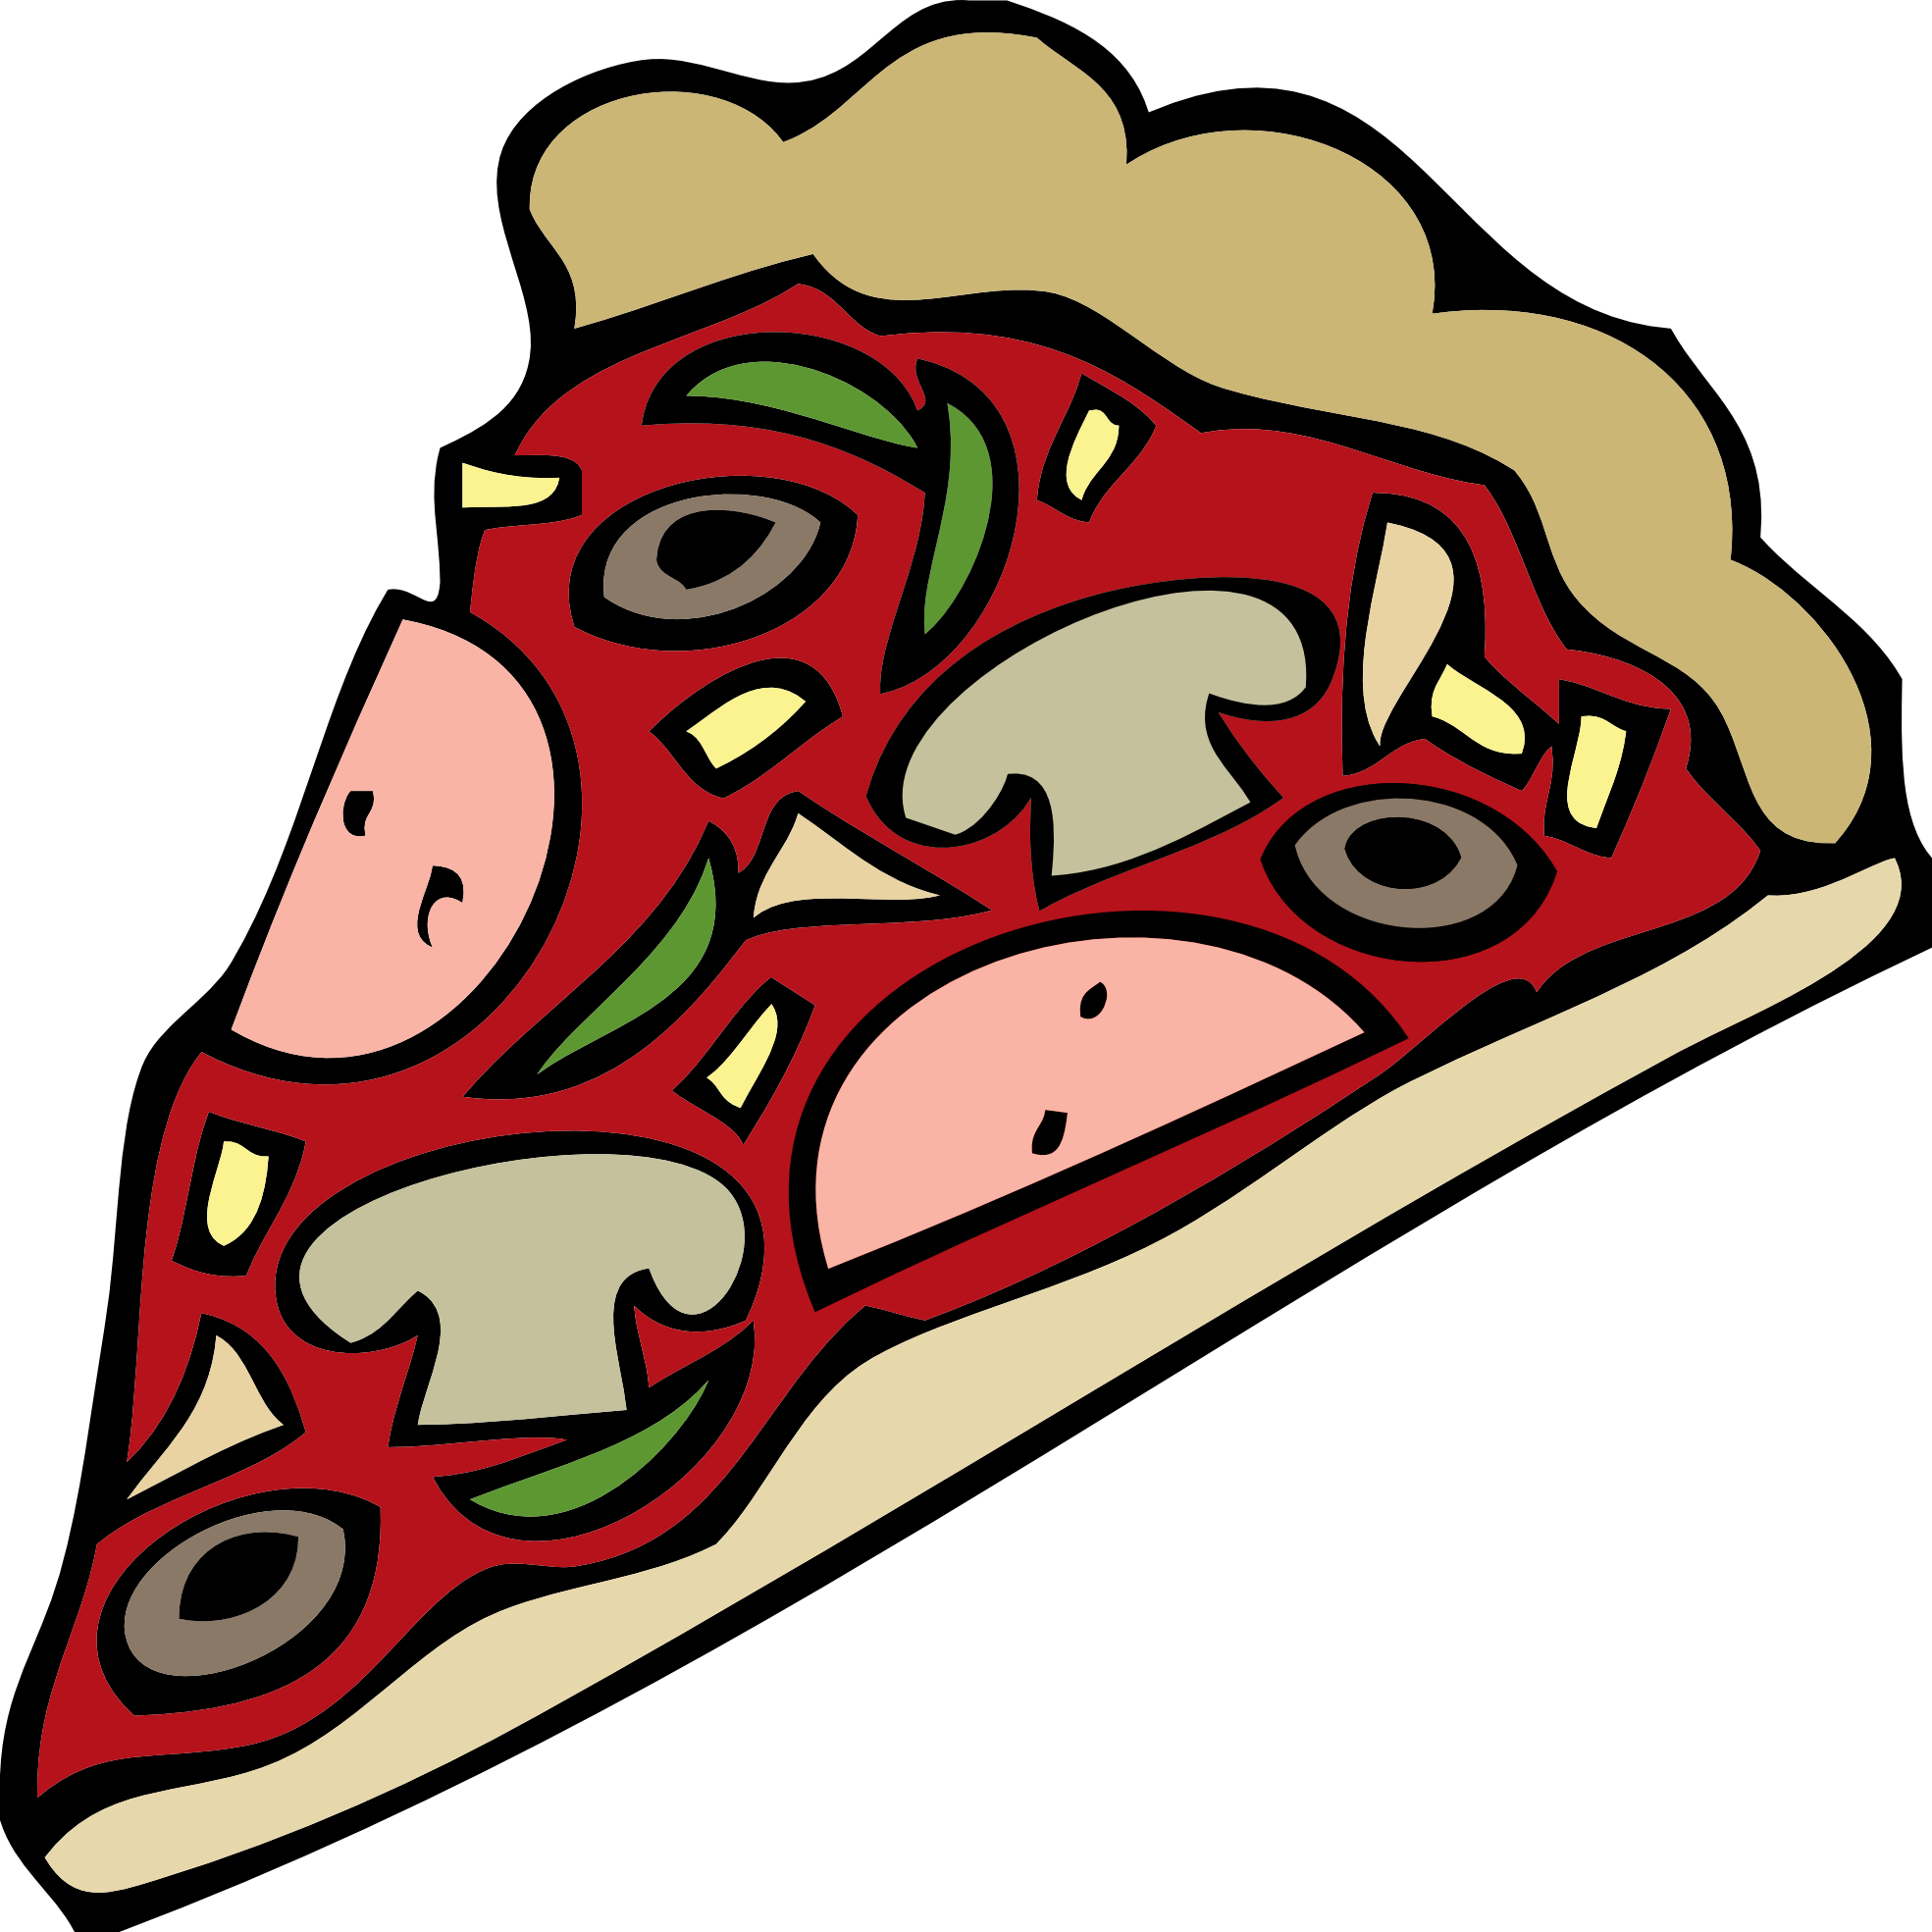 Pizza Clip Art - Pizza Slice Clipart